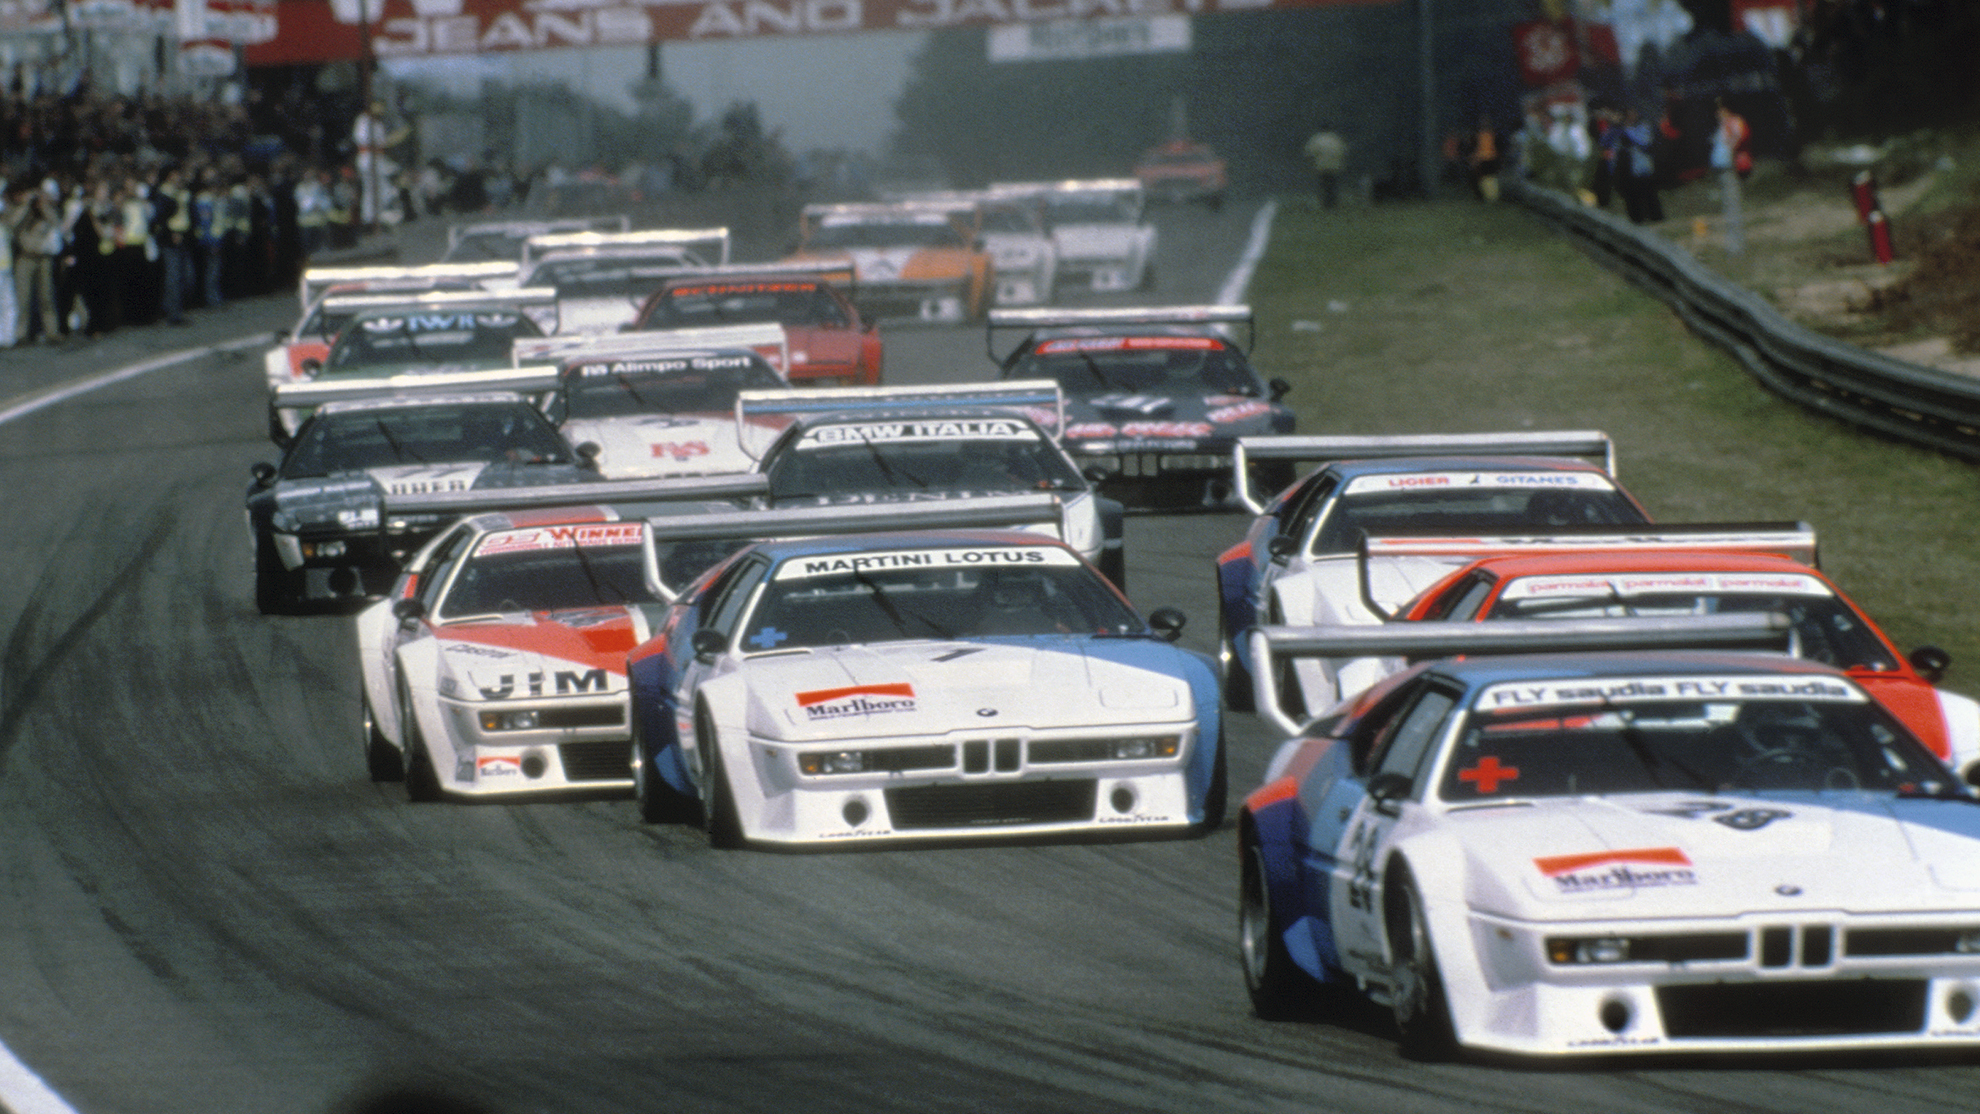 Los BMW Procar compitiendo en el circuito de Zolder en 1979.